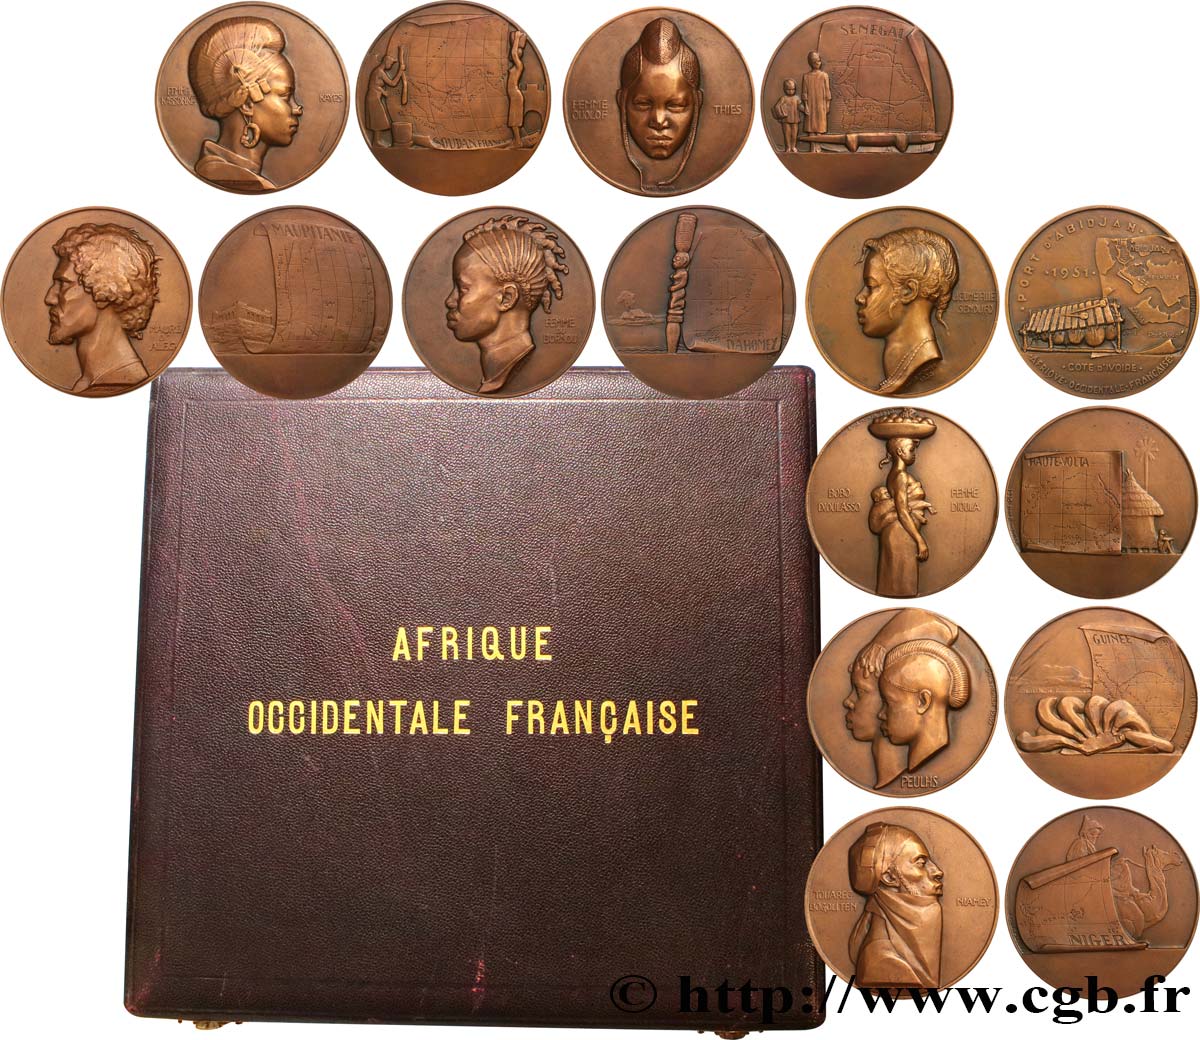 FRANZÖSISCHE WESTAFRIKA Coffret de 8 médailles, Afrique Occidentale Française, les populations d’Afrique de l’Ouest VZ